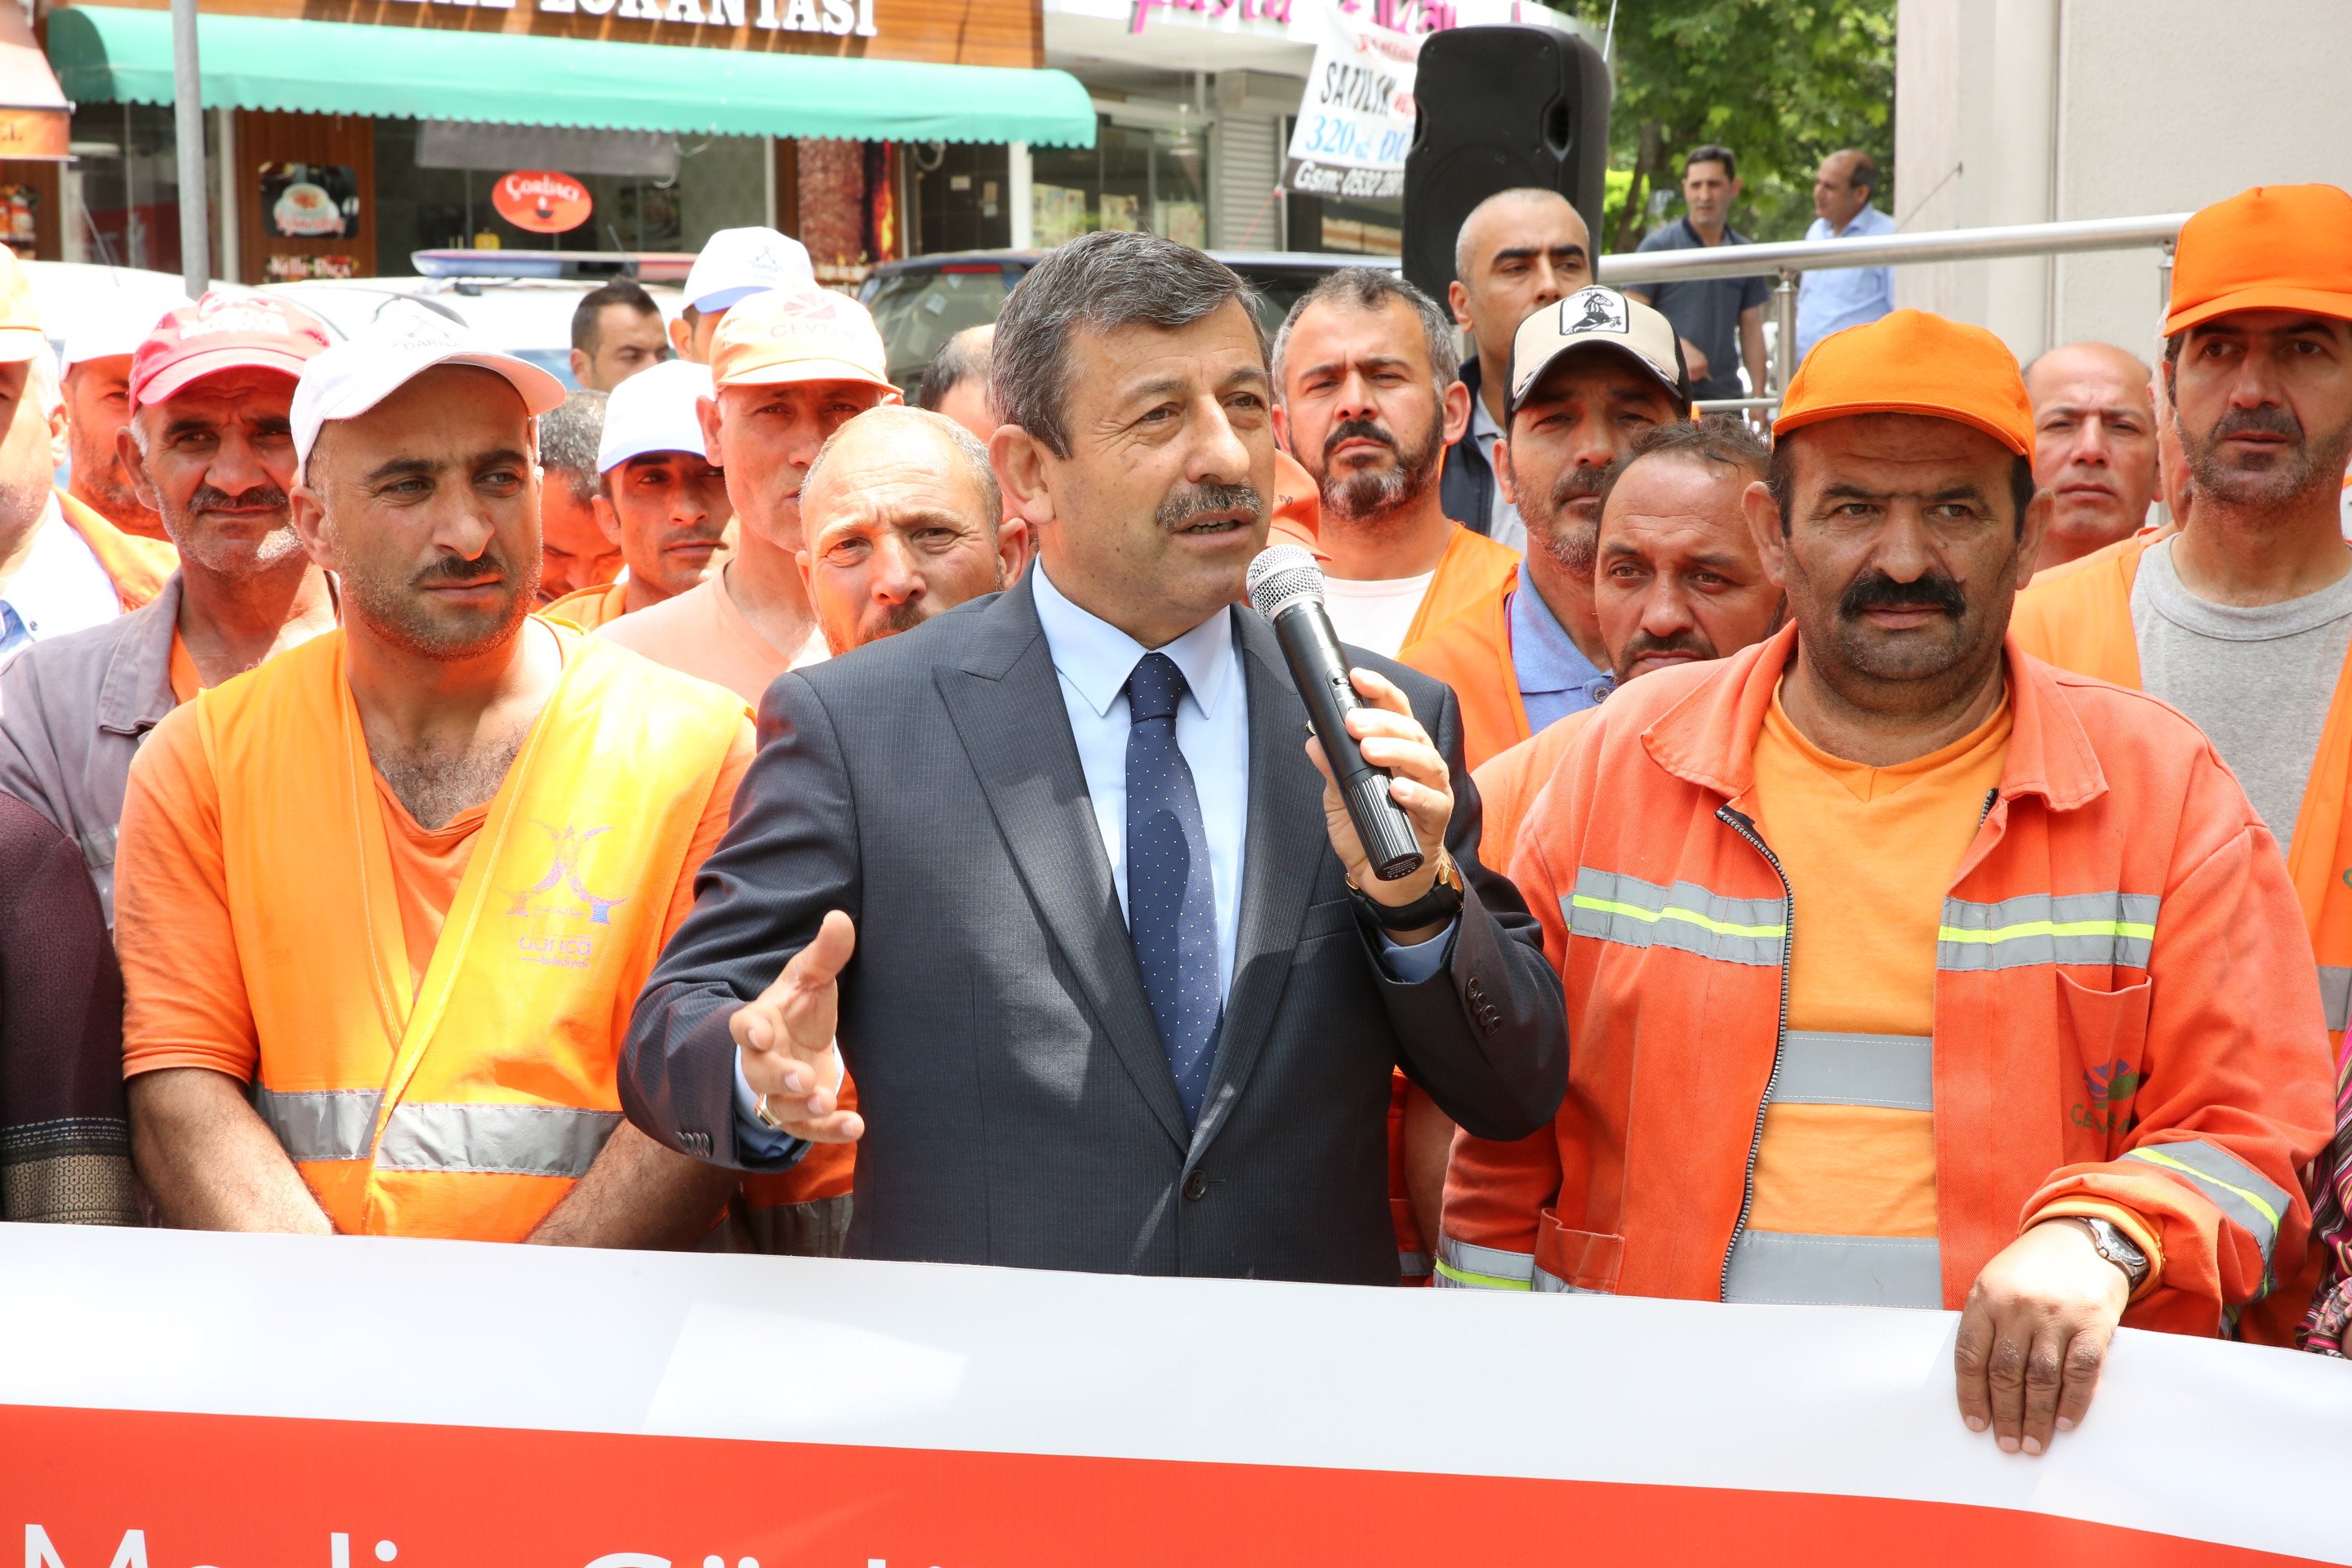   Darıca'dan Cumhurbaşkanına destek kampanyası